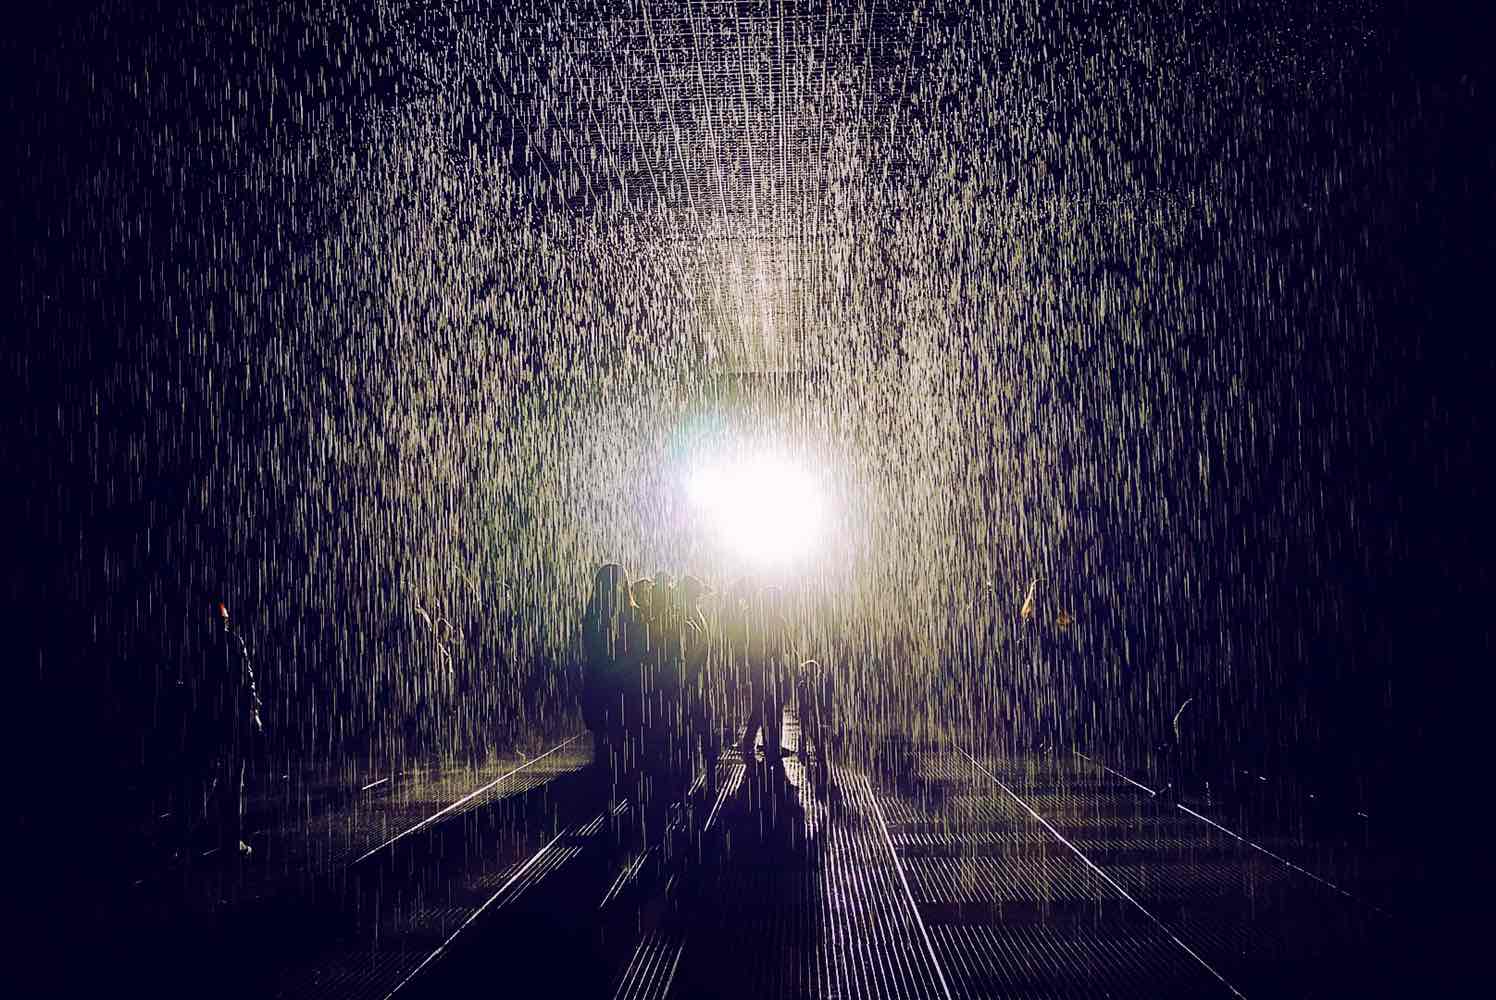 大型艺术装置作品《雨屋》 引爆伦敦的超现实「雨屋」